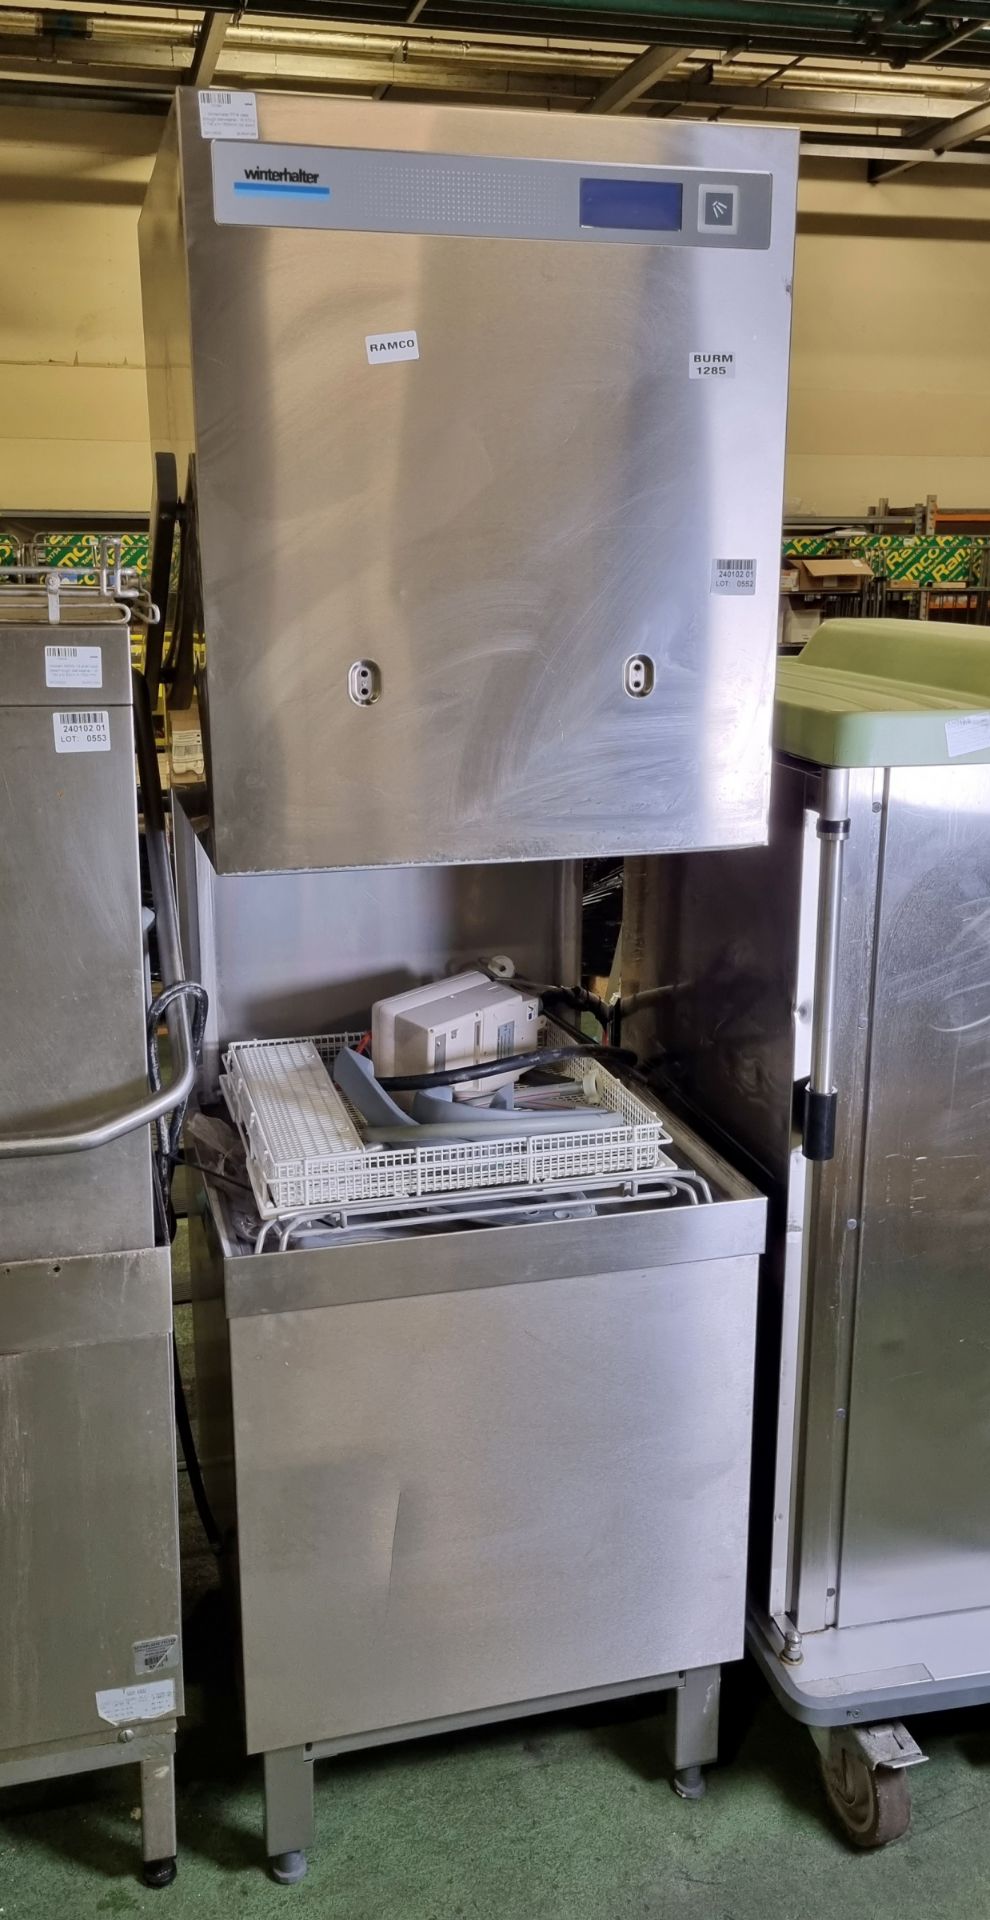 Winterhalter PT-M pass through dishwasher - W 610 x D 740 x H 1600mm